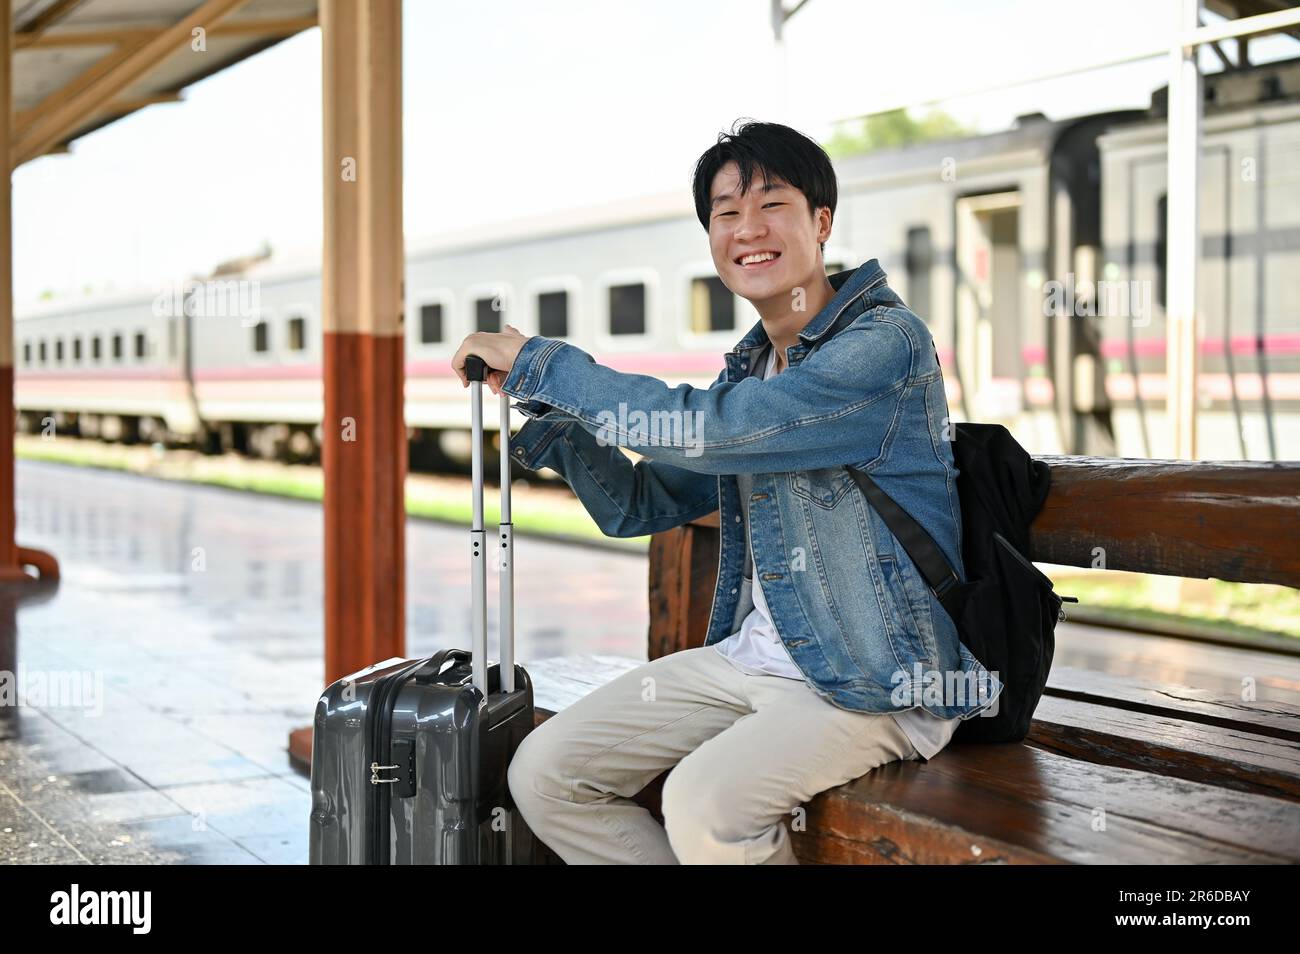 Un jeune homme asiatique souriant et heureux avec son sac à dos et sa valise est assis sur un banc en bois, attendant un train à la gare. Banque D'Images